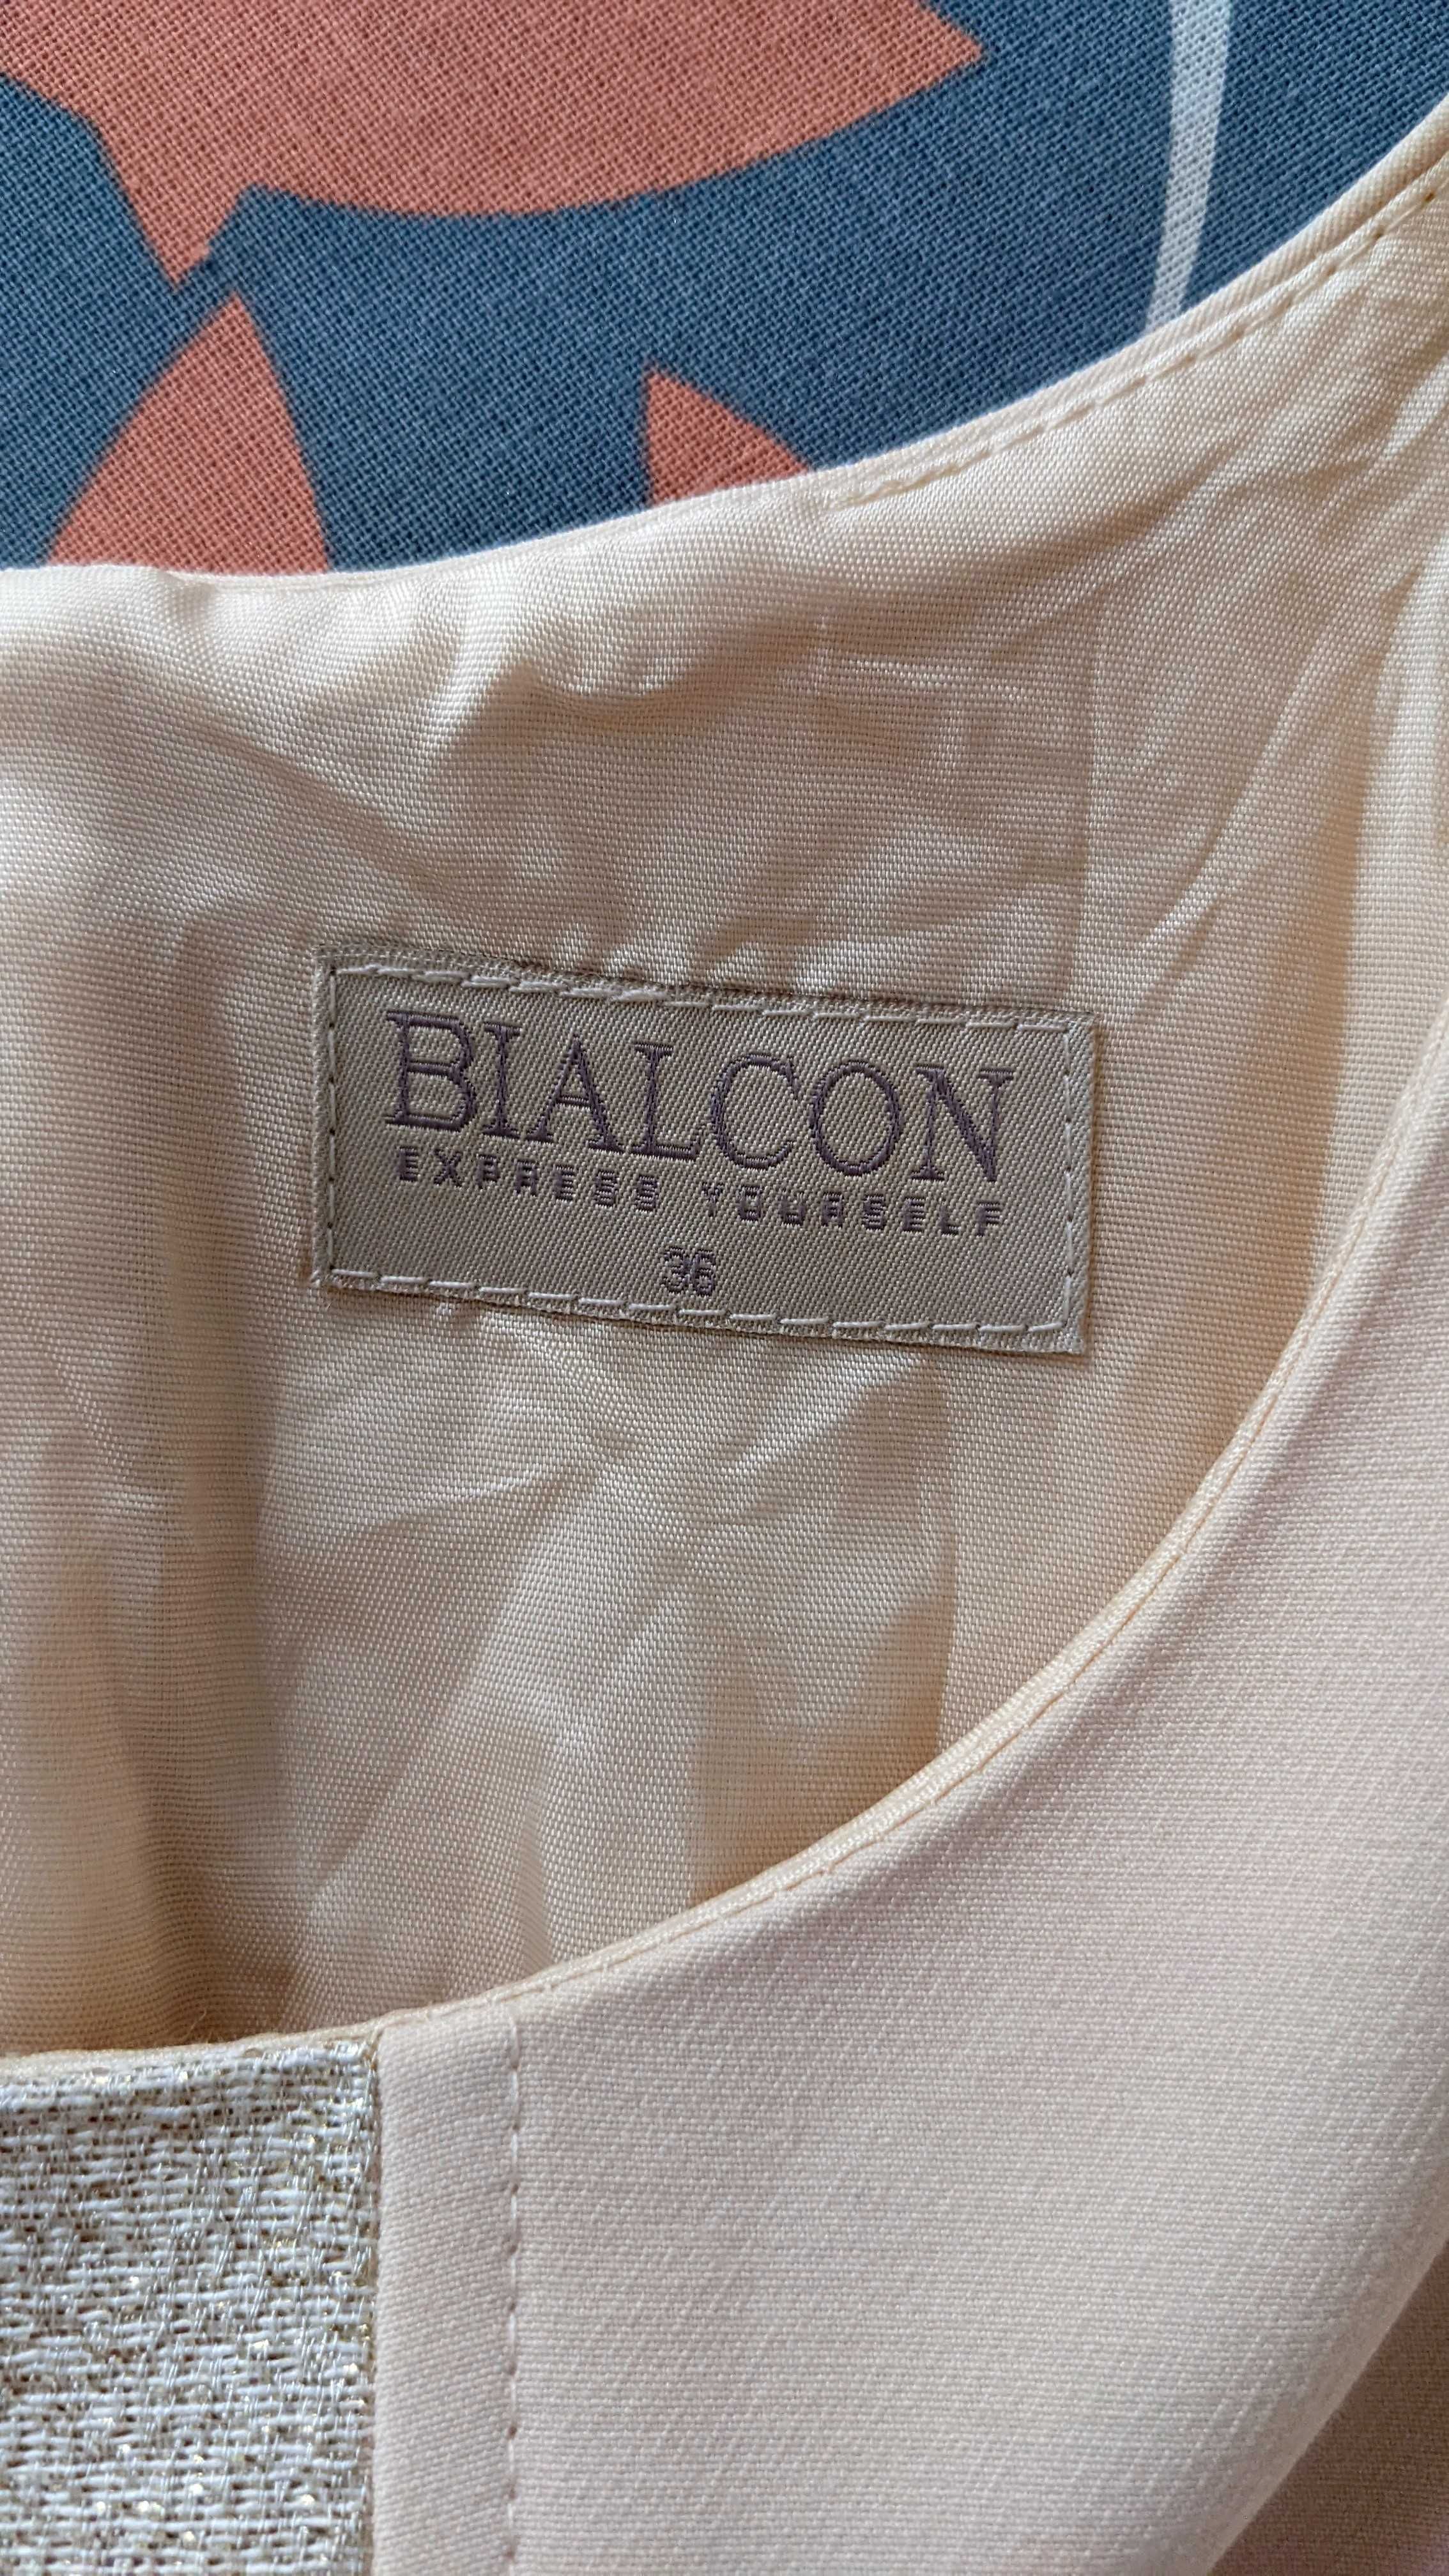 Koktajlowa sukienka Bialcon kremowa brzoskwiniowa r. 36